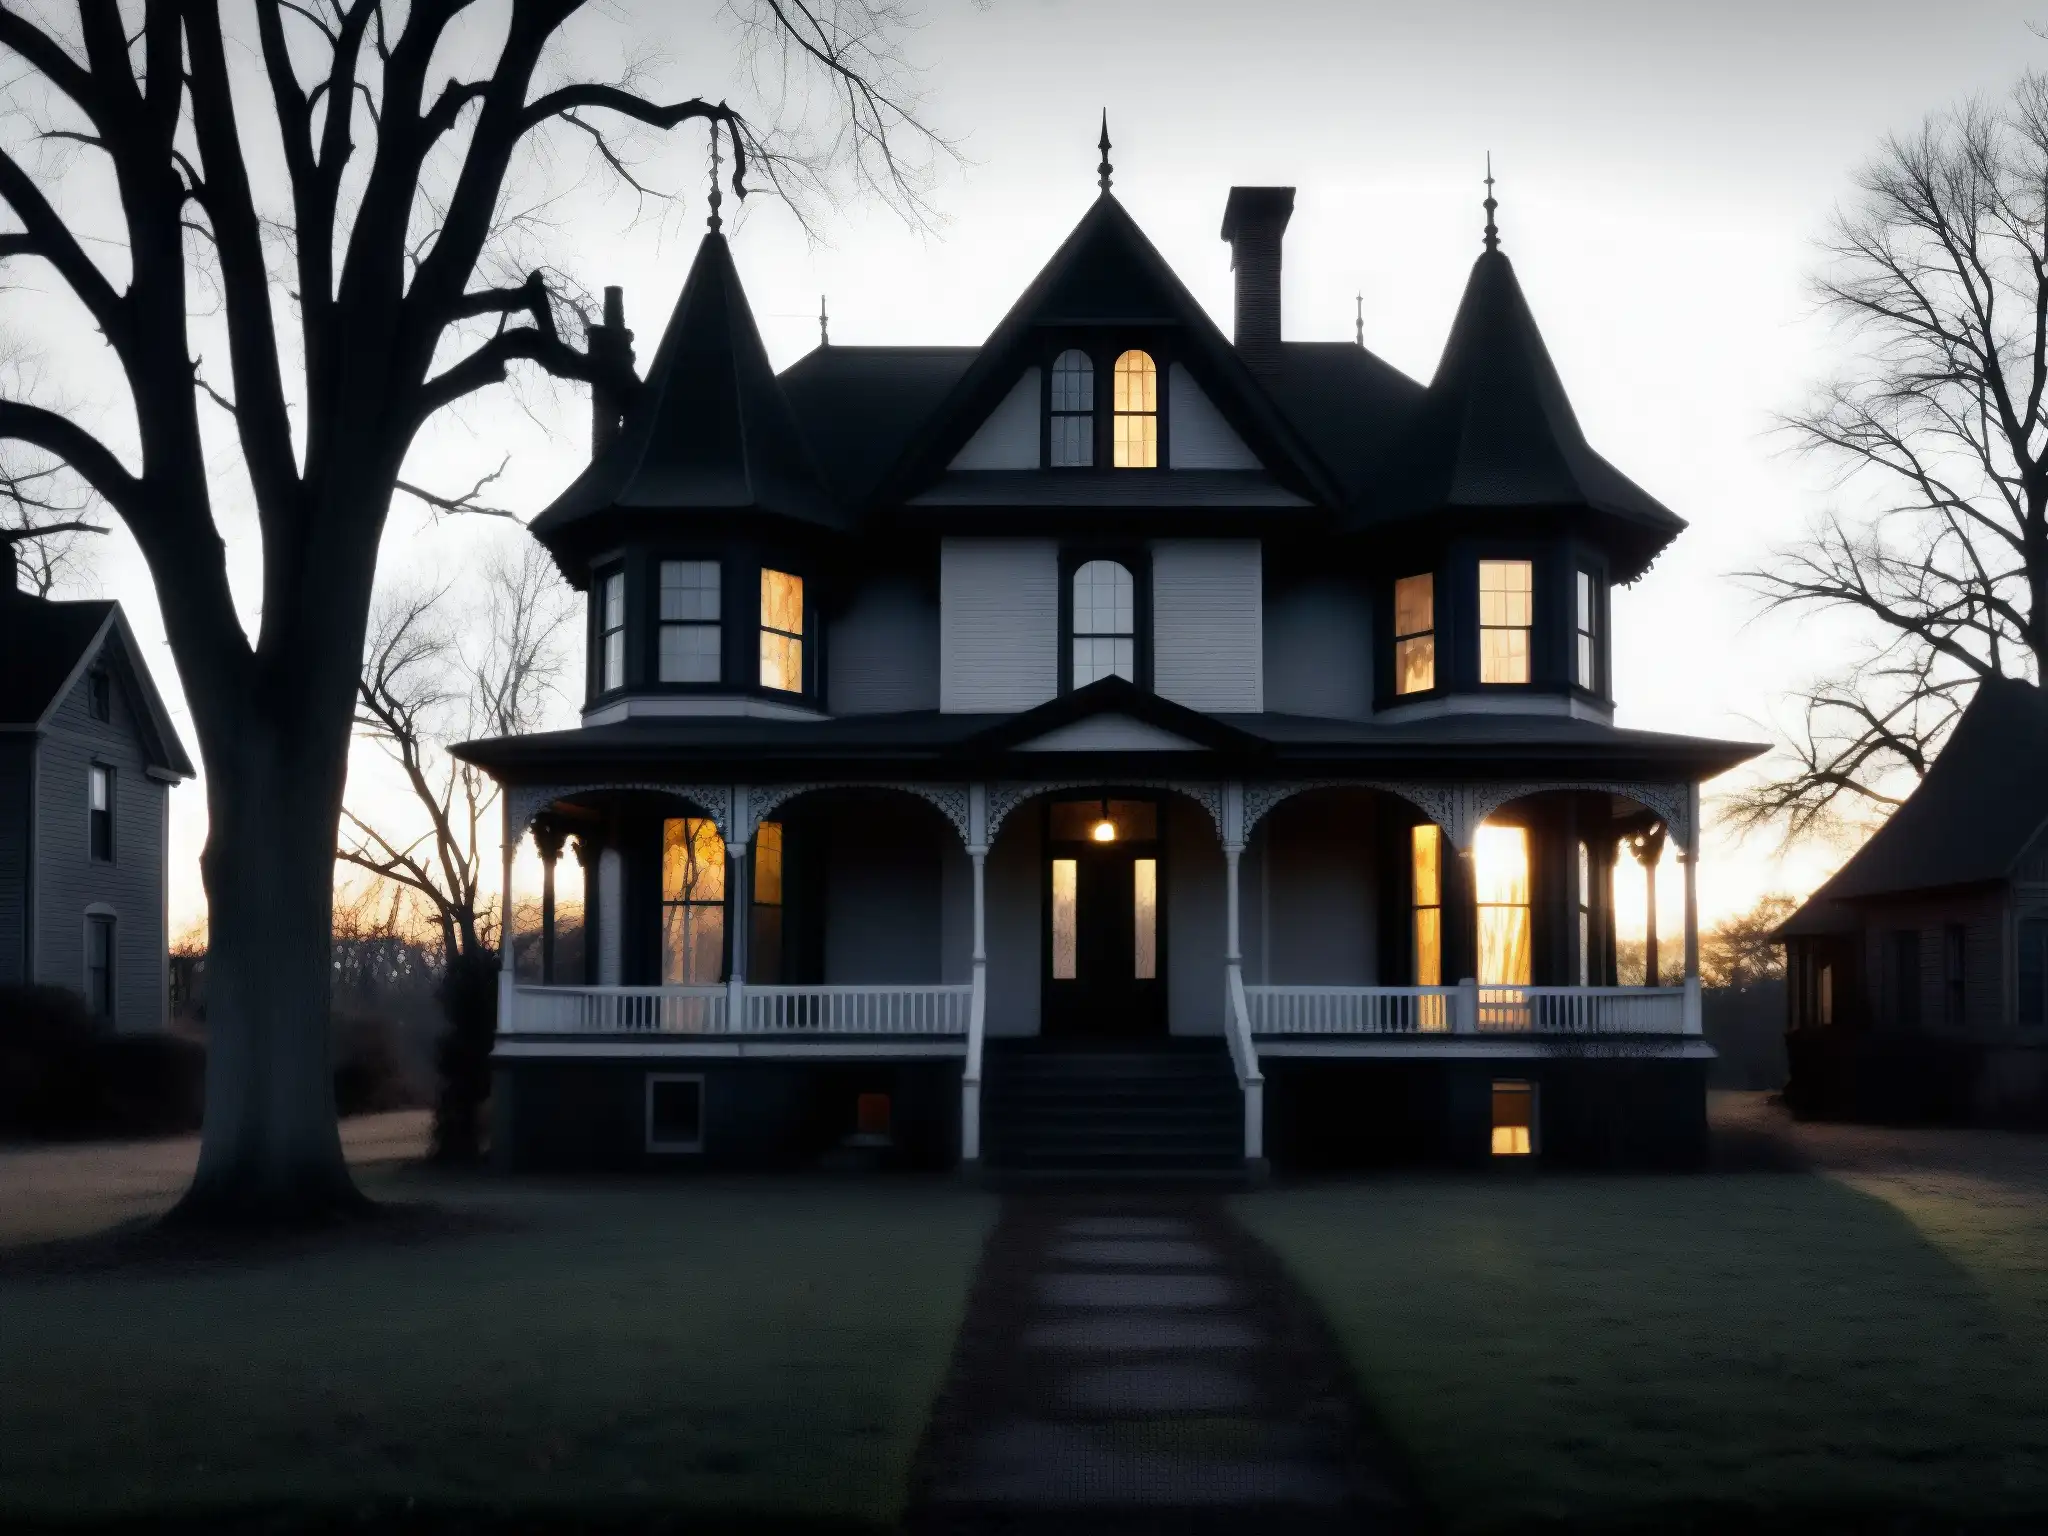 La imagen muestra la inquietante silueta de una antigua casa victoriana al anochecer, evocando el misterio de una morada embrujada